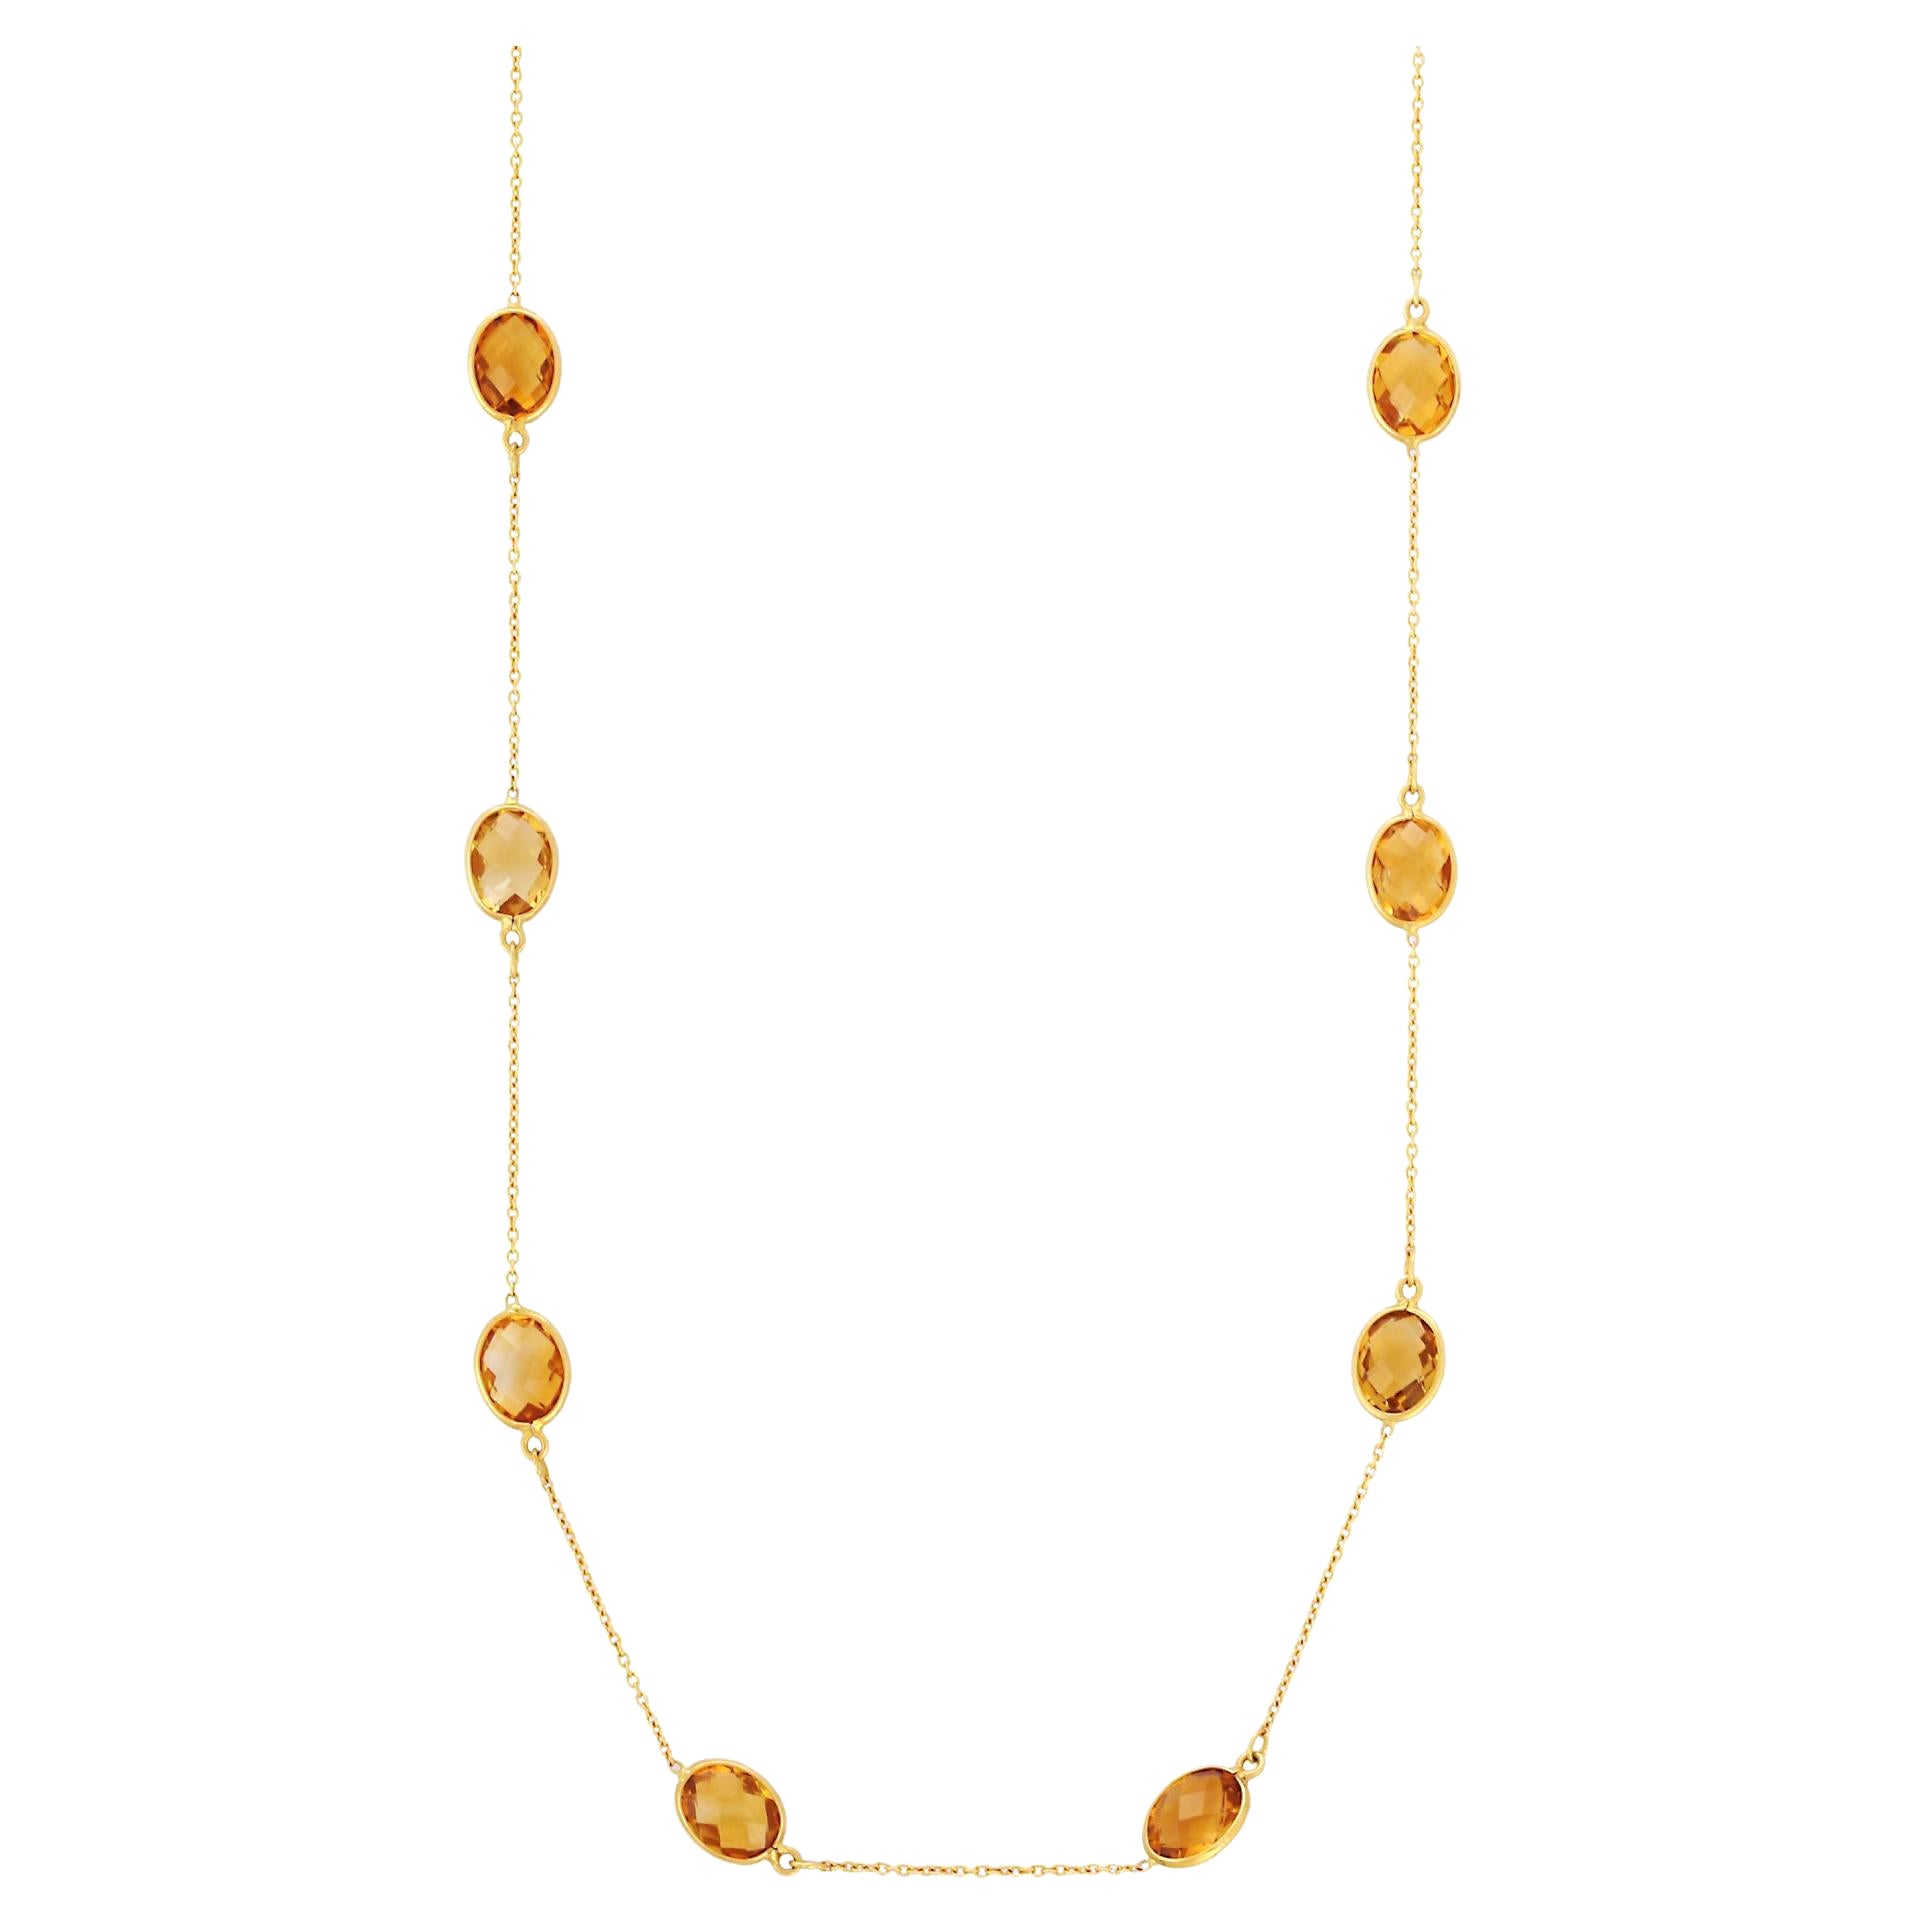 Collier à chaîne en or jaune 18 carats avec citrine taille ovale délicate de 17,5 carats